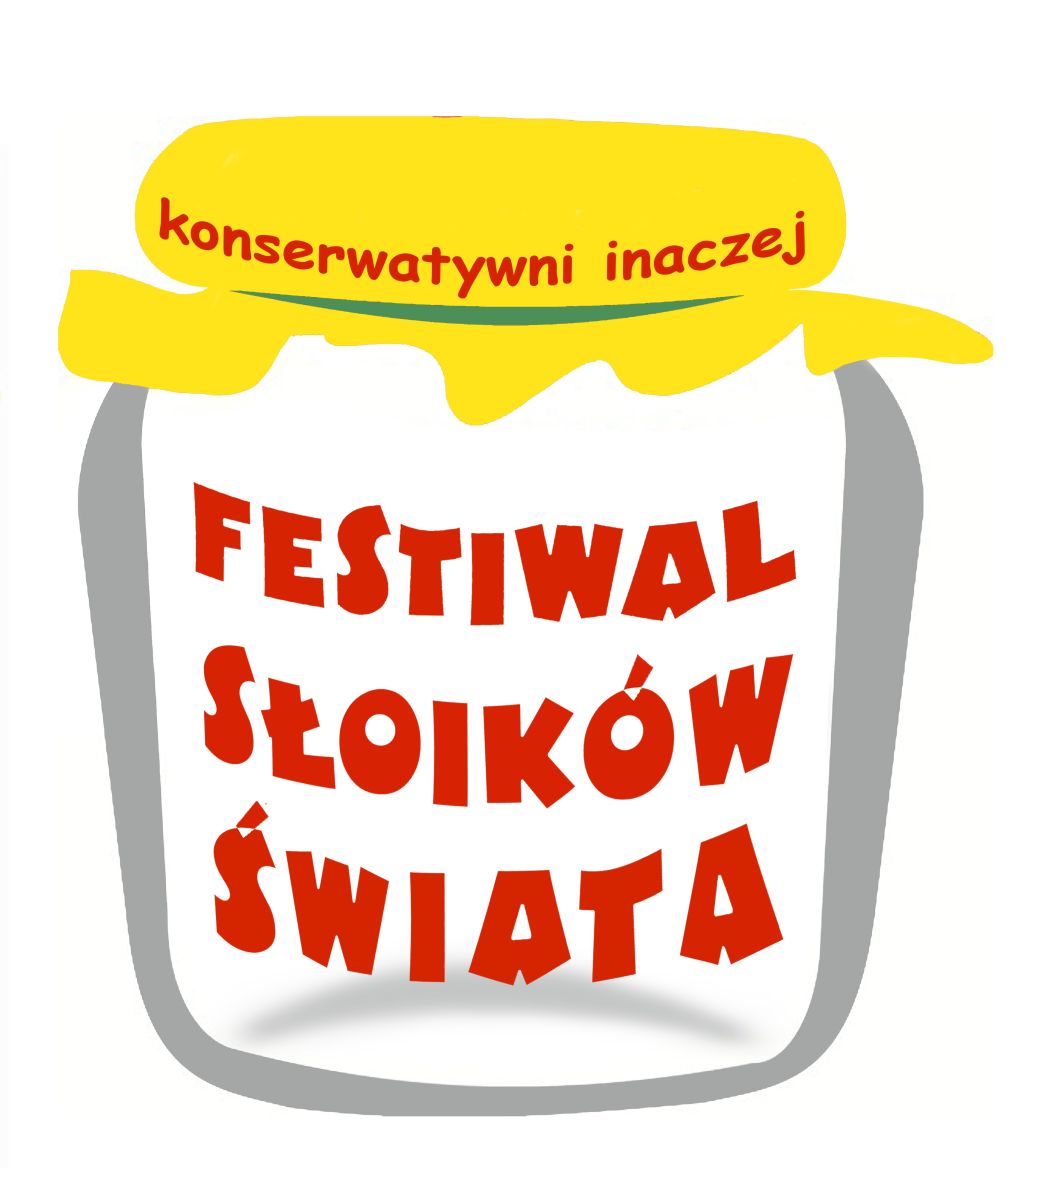 Festiwal Słoikow Świata –  25 września